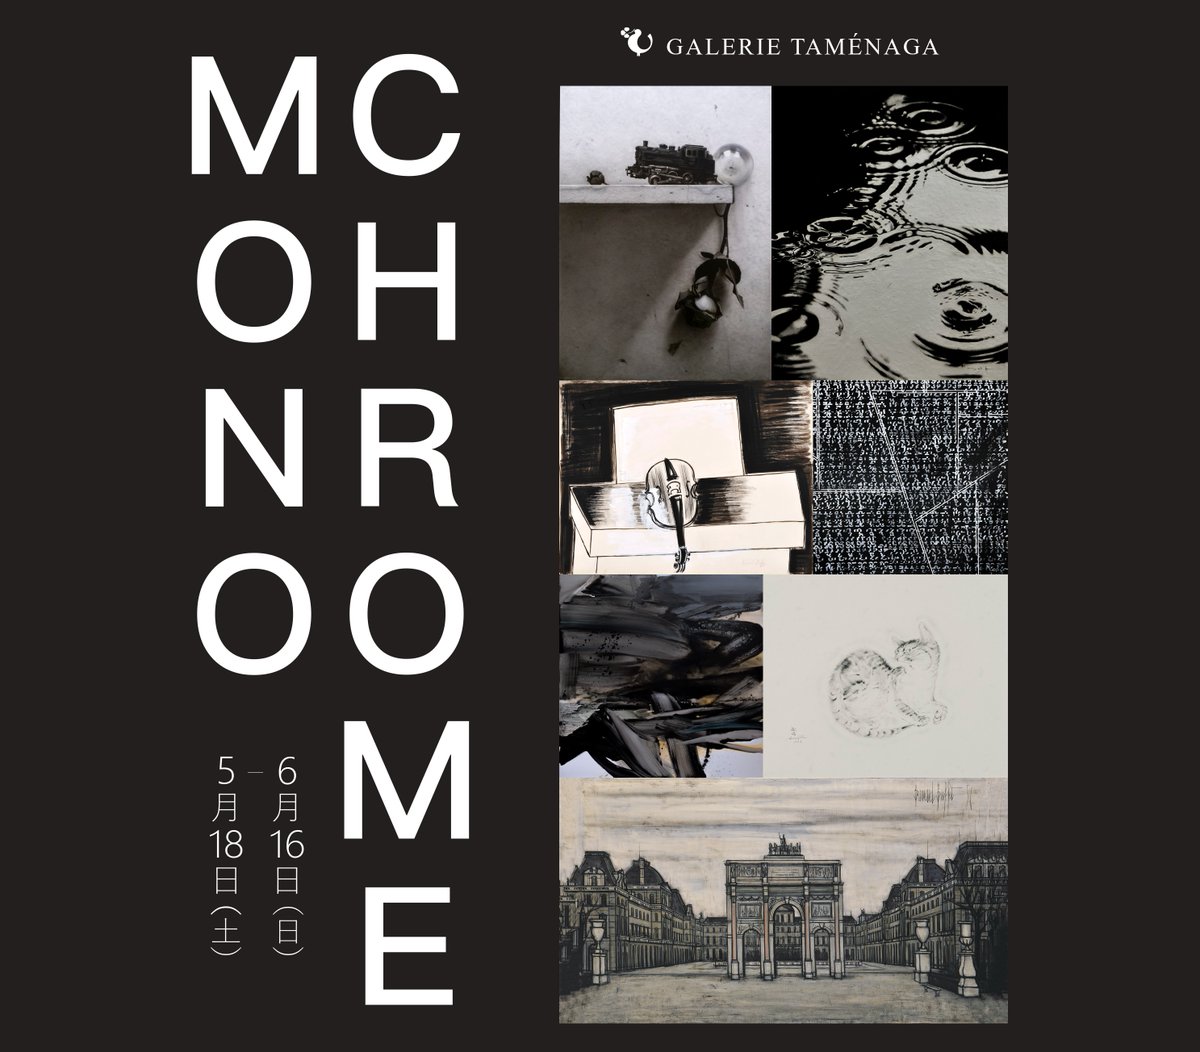 【展覧会のお知らせ】
〈Monochrome(モノクローム)展〉
― モノクロームが映し出す内なる世界観 ―